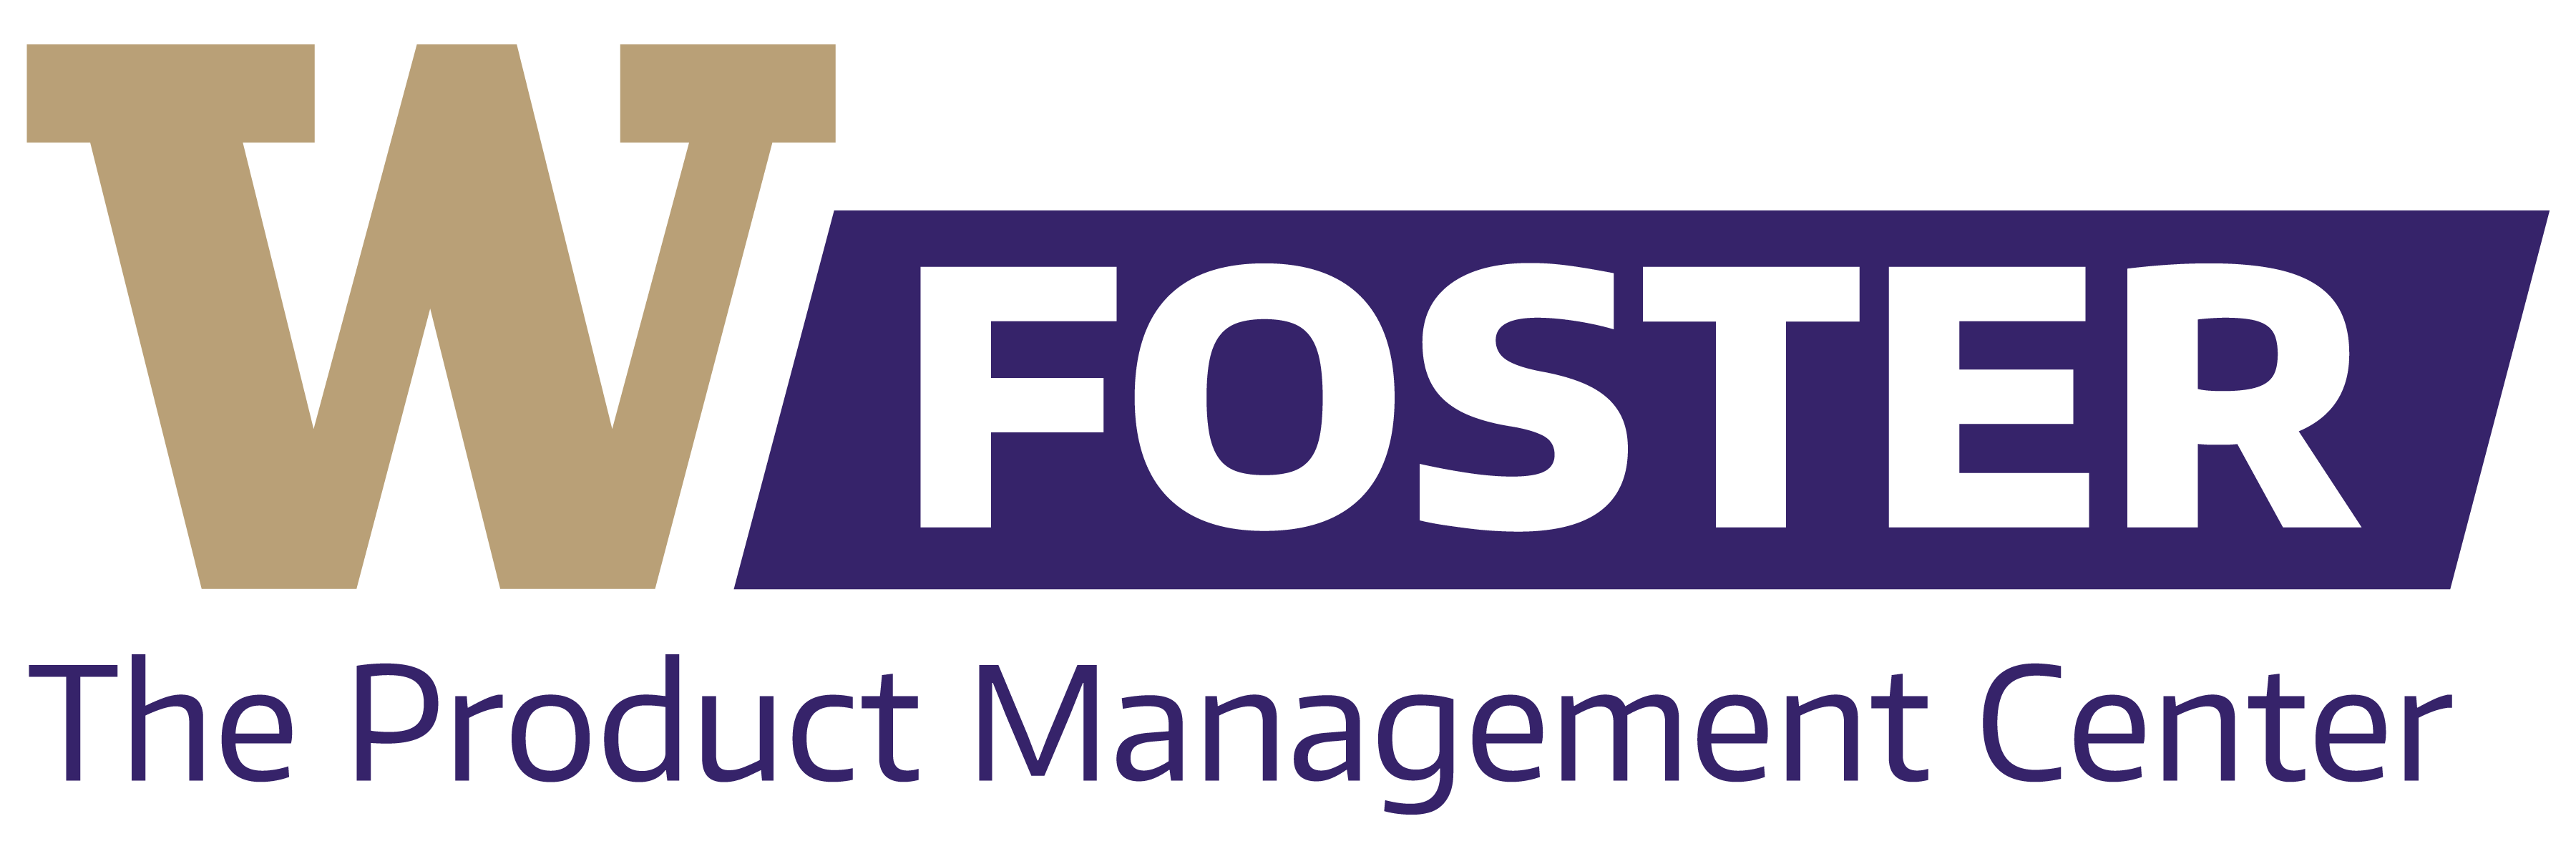 UW Foster School of Business Logo